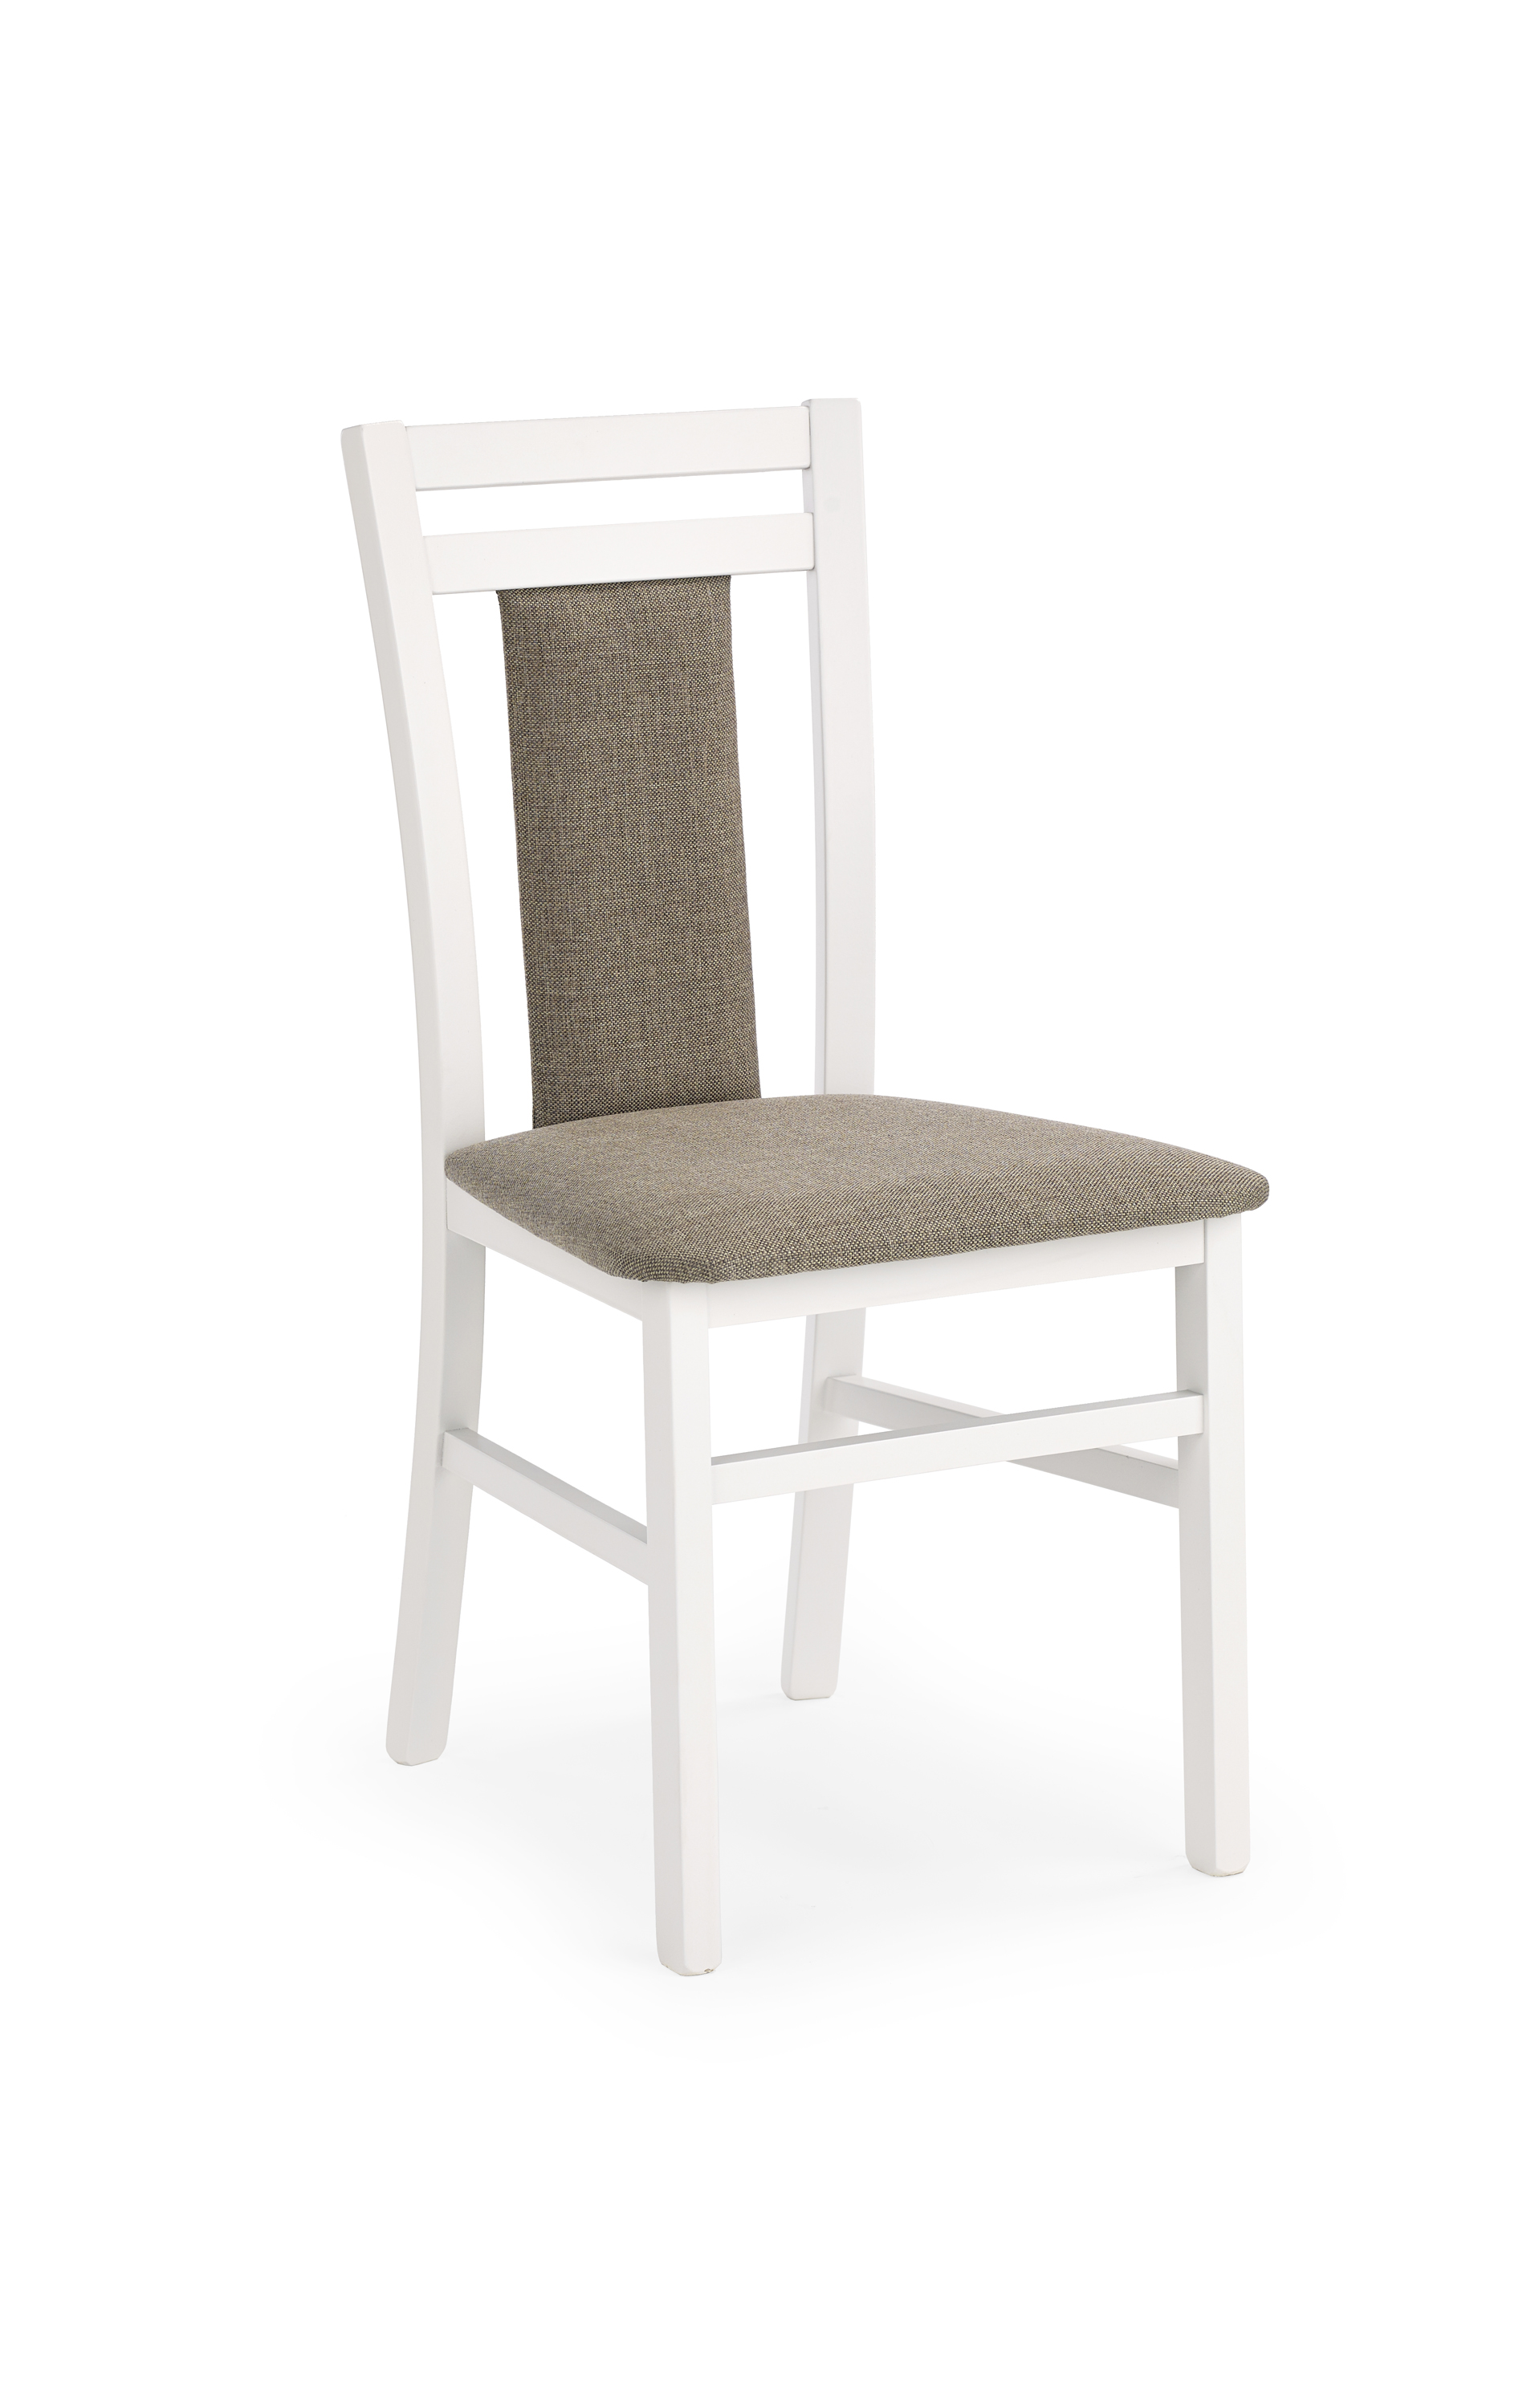 Krzesło do jadalni Hubert 8 białe/tap. Inari 23 krzesło do jadalni hubert 8 białe/tap. inari 23